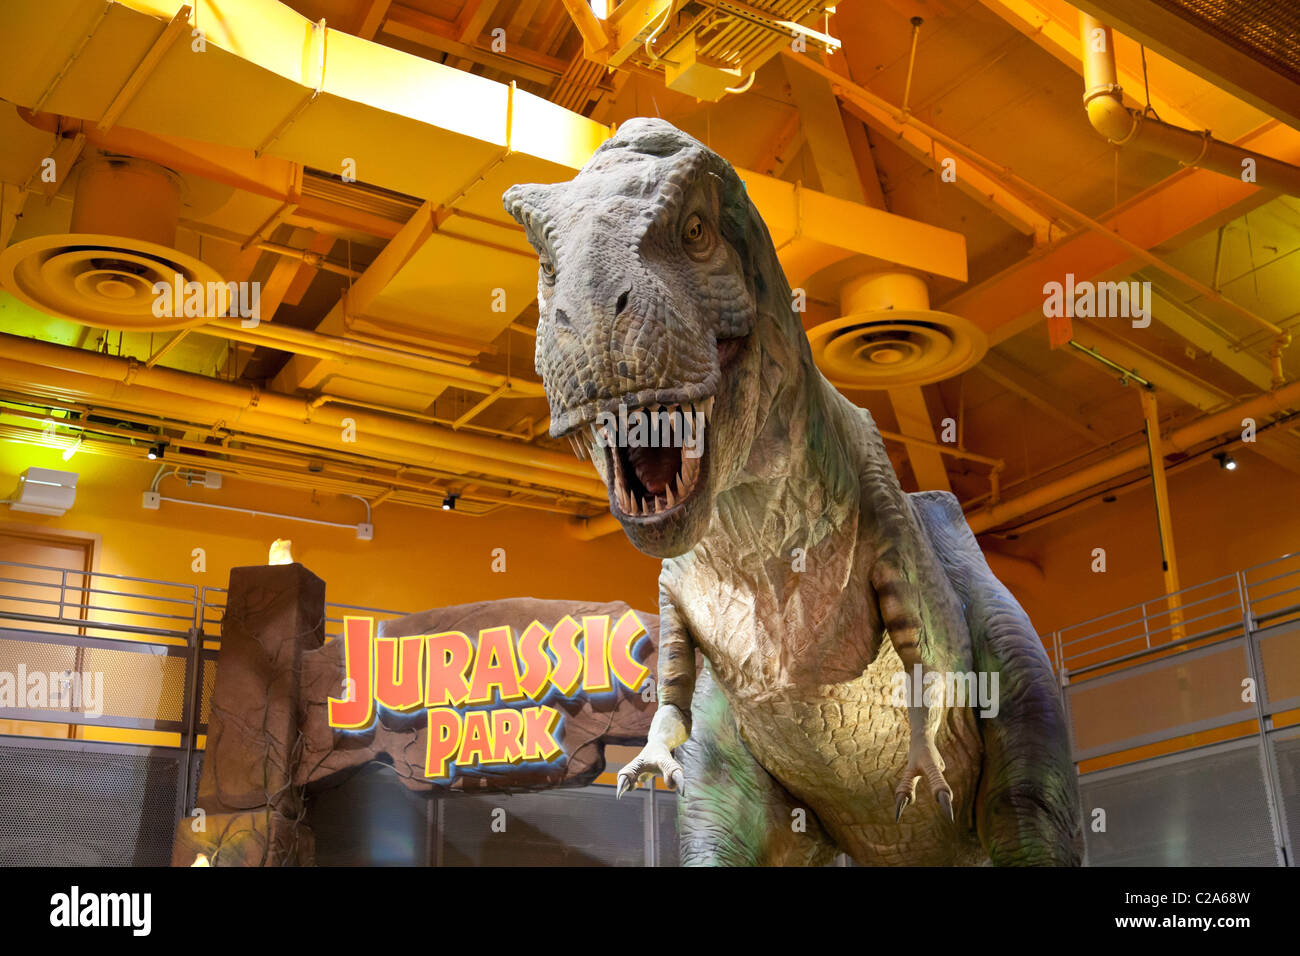 Dinosaur Game ready model orange t - rex | 3D model